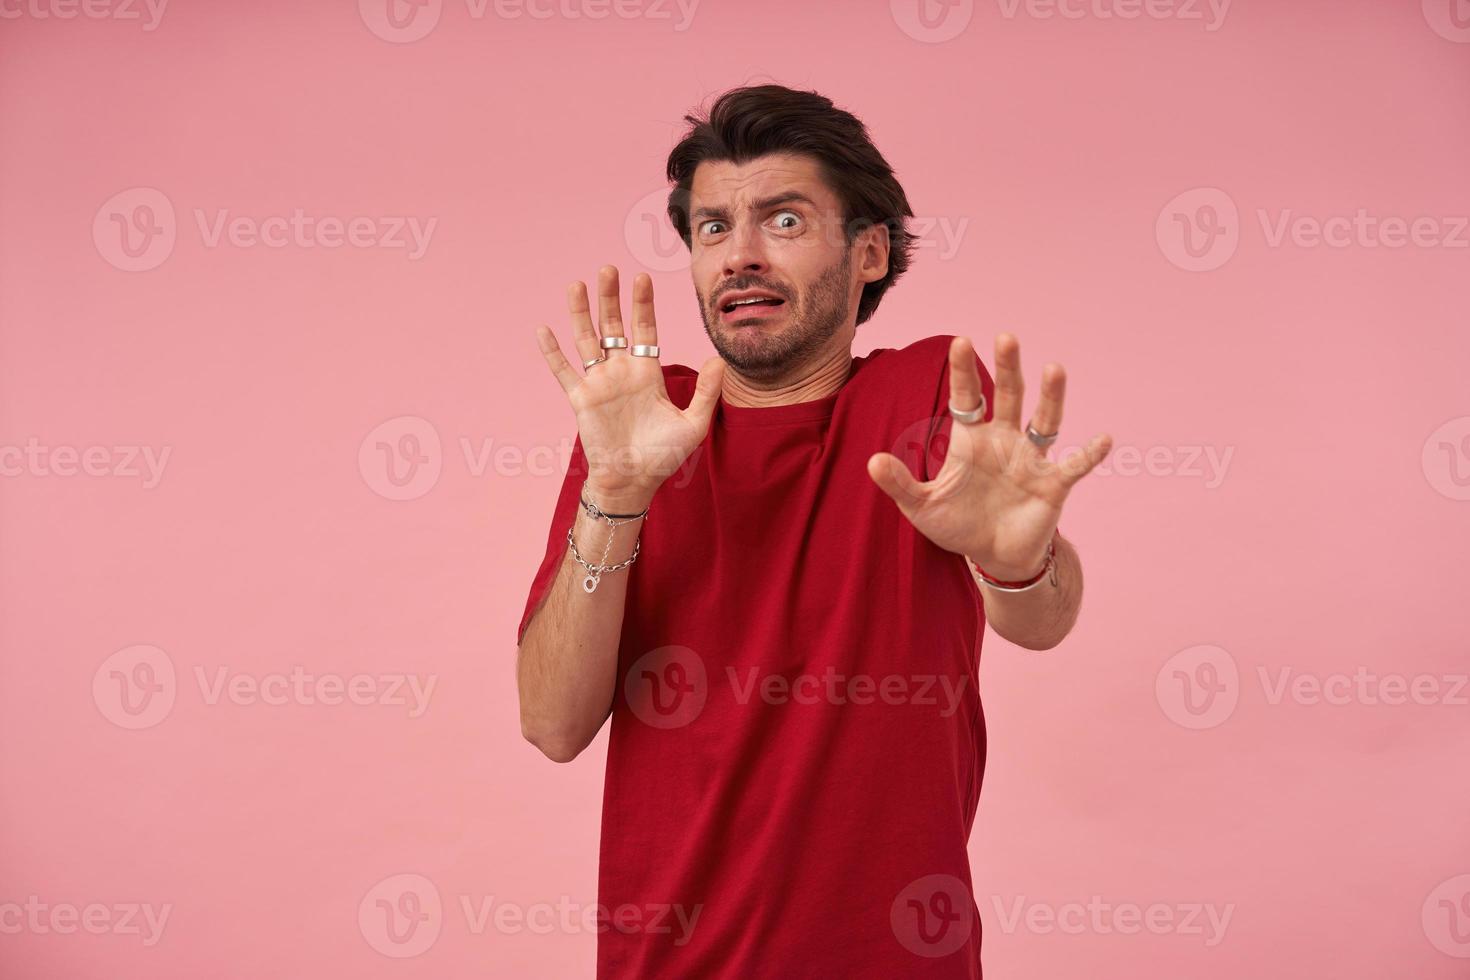 giovane spaventato spaventato con setole in maglietta rossa che fa un gesto spaventato con i palmi delle mani mentre cerca di difendersi su sfondo rosa foto